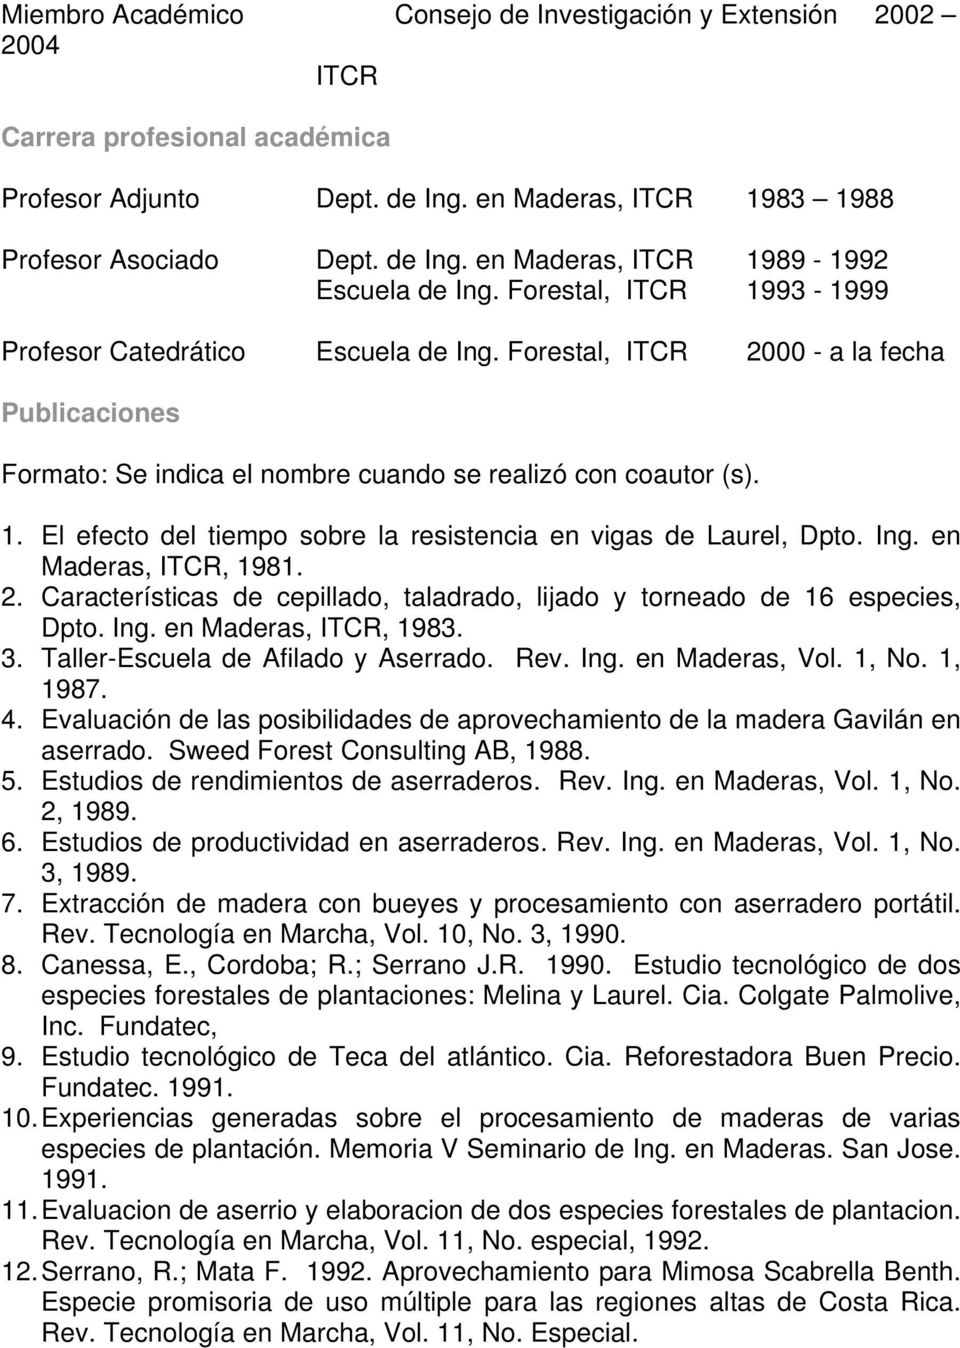 Ing. en Maderas, ITCR, 1981. 2. Características de cepillado, taladrado, lijado y torneado de 16 especies, Dpto. Ing. en Maderas, ITCR, 1983. 3. Taller-Escuela de Afilado y Aserrado. Rev. Ing. en Maderas, Vol.